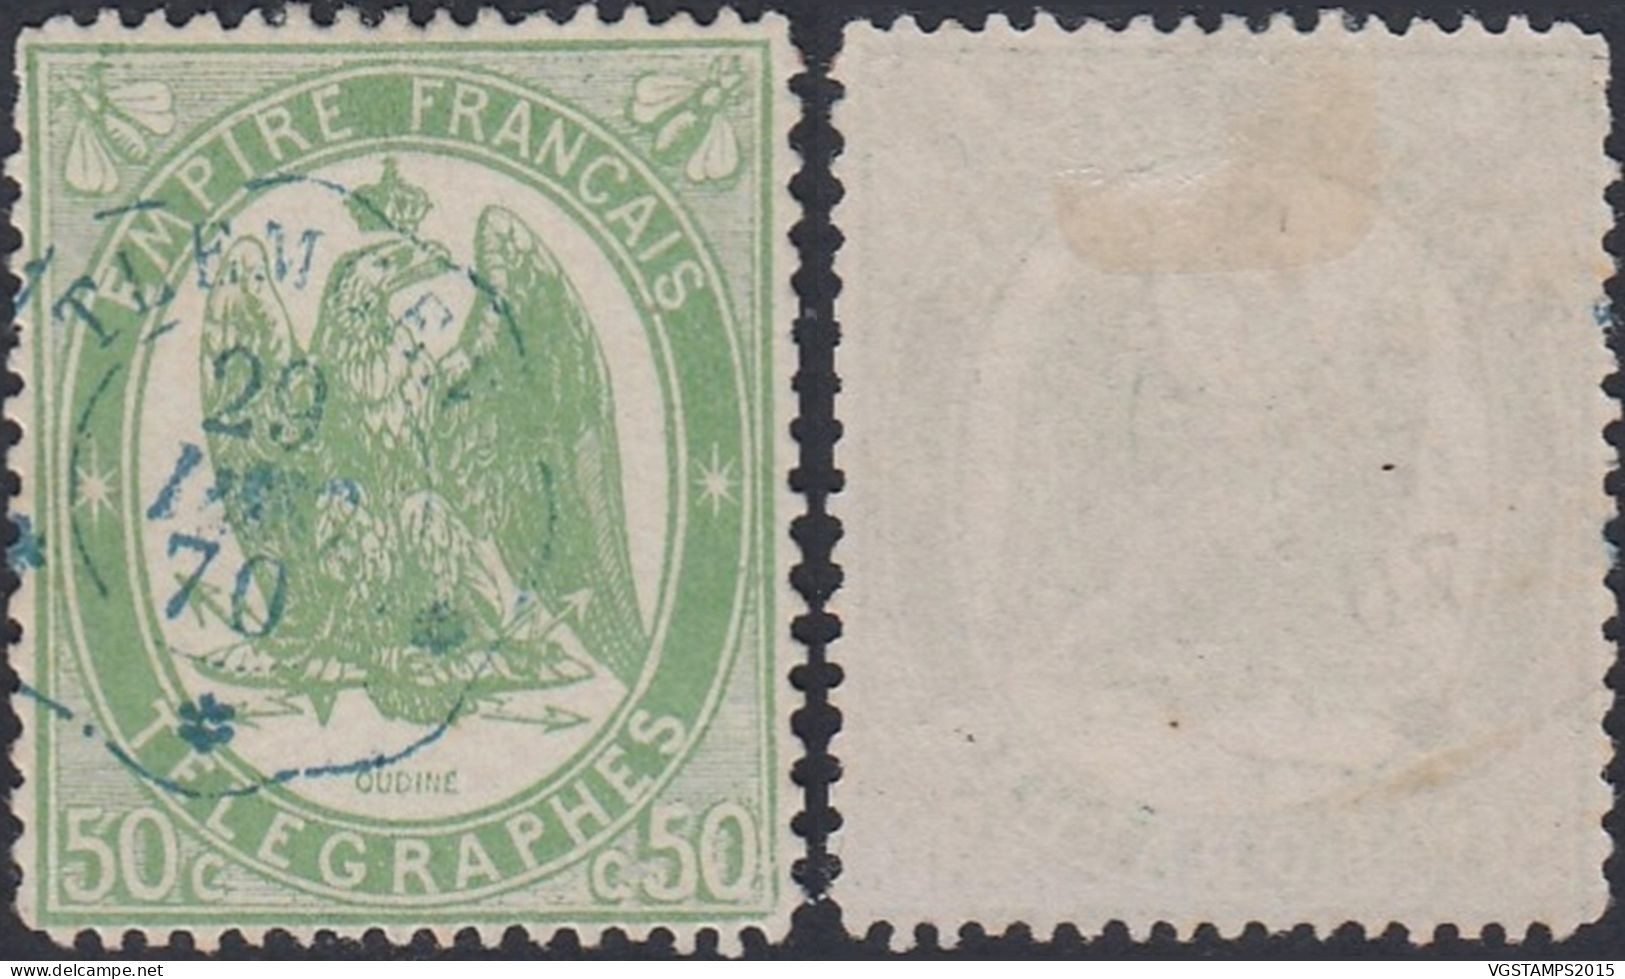 Algérie 1868 (Colonie Française) - Timbre Neuf. Timbre Télégraphe Nr.: 6. Qualité Normale.... (EB) DC-12493 - Airmail